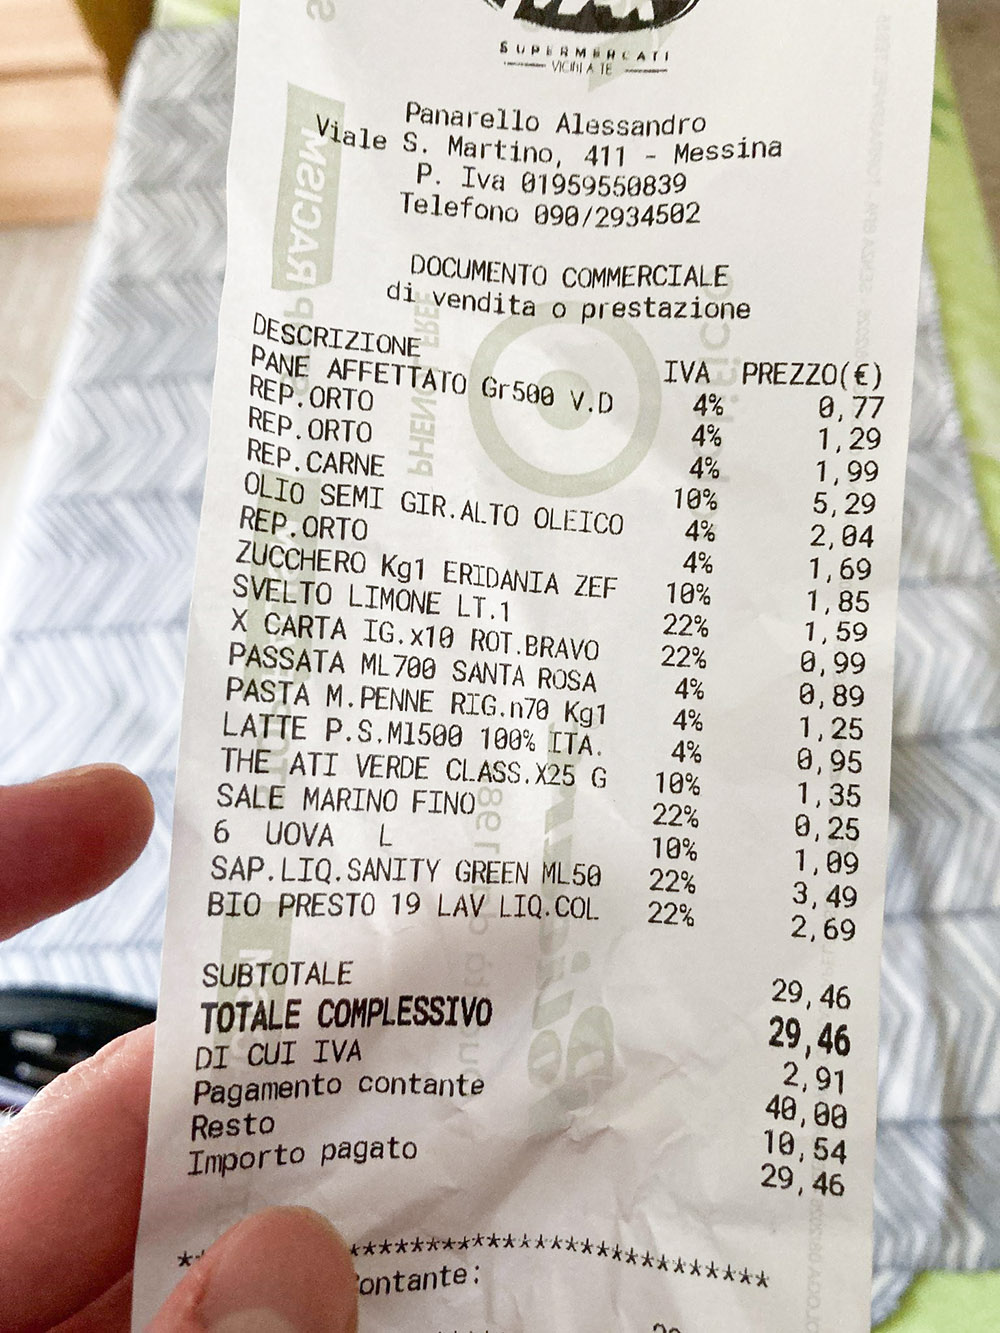 Цены в местном супермаркете. Самое дорогое — мясо за 5,29 €